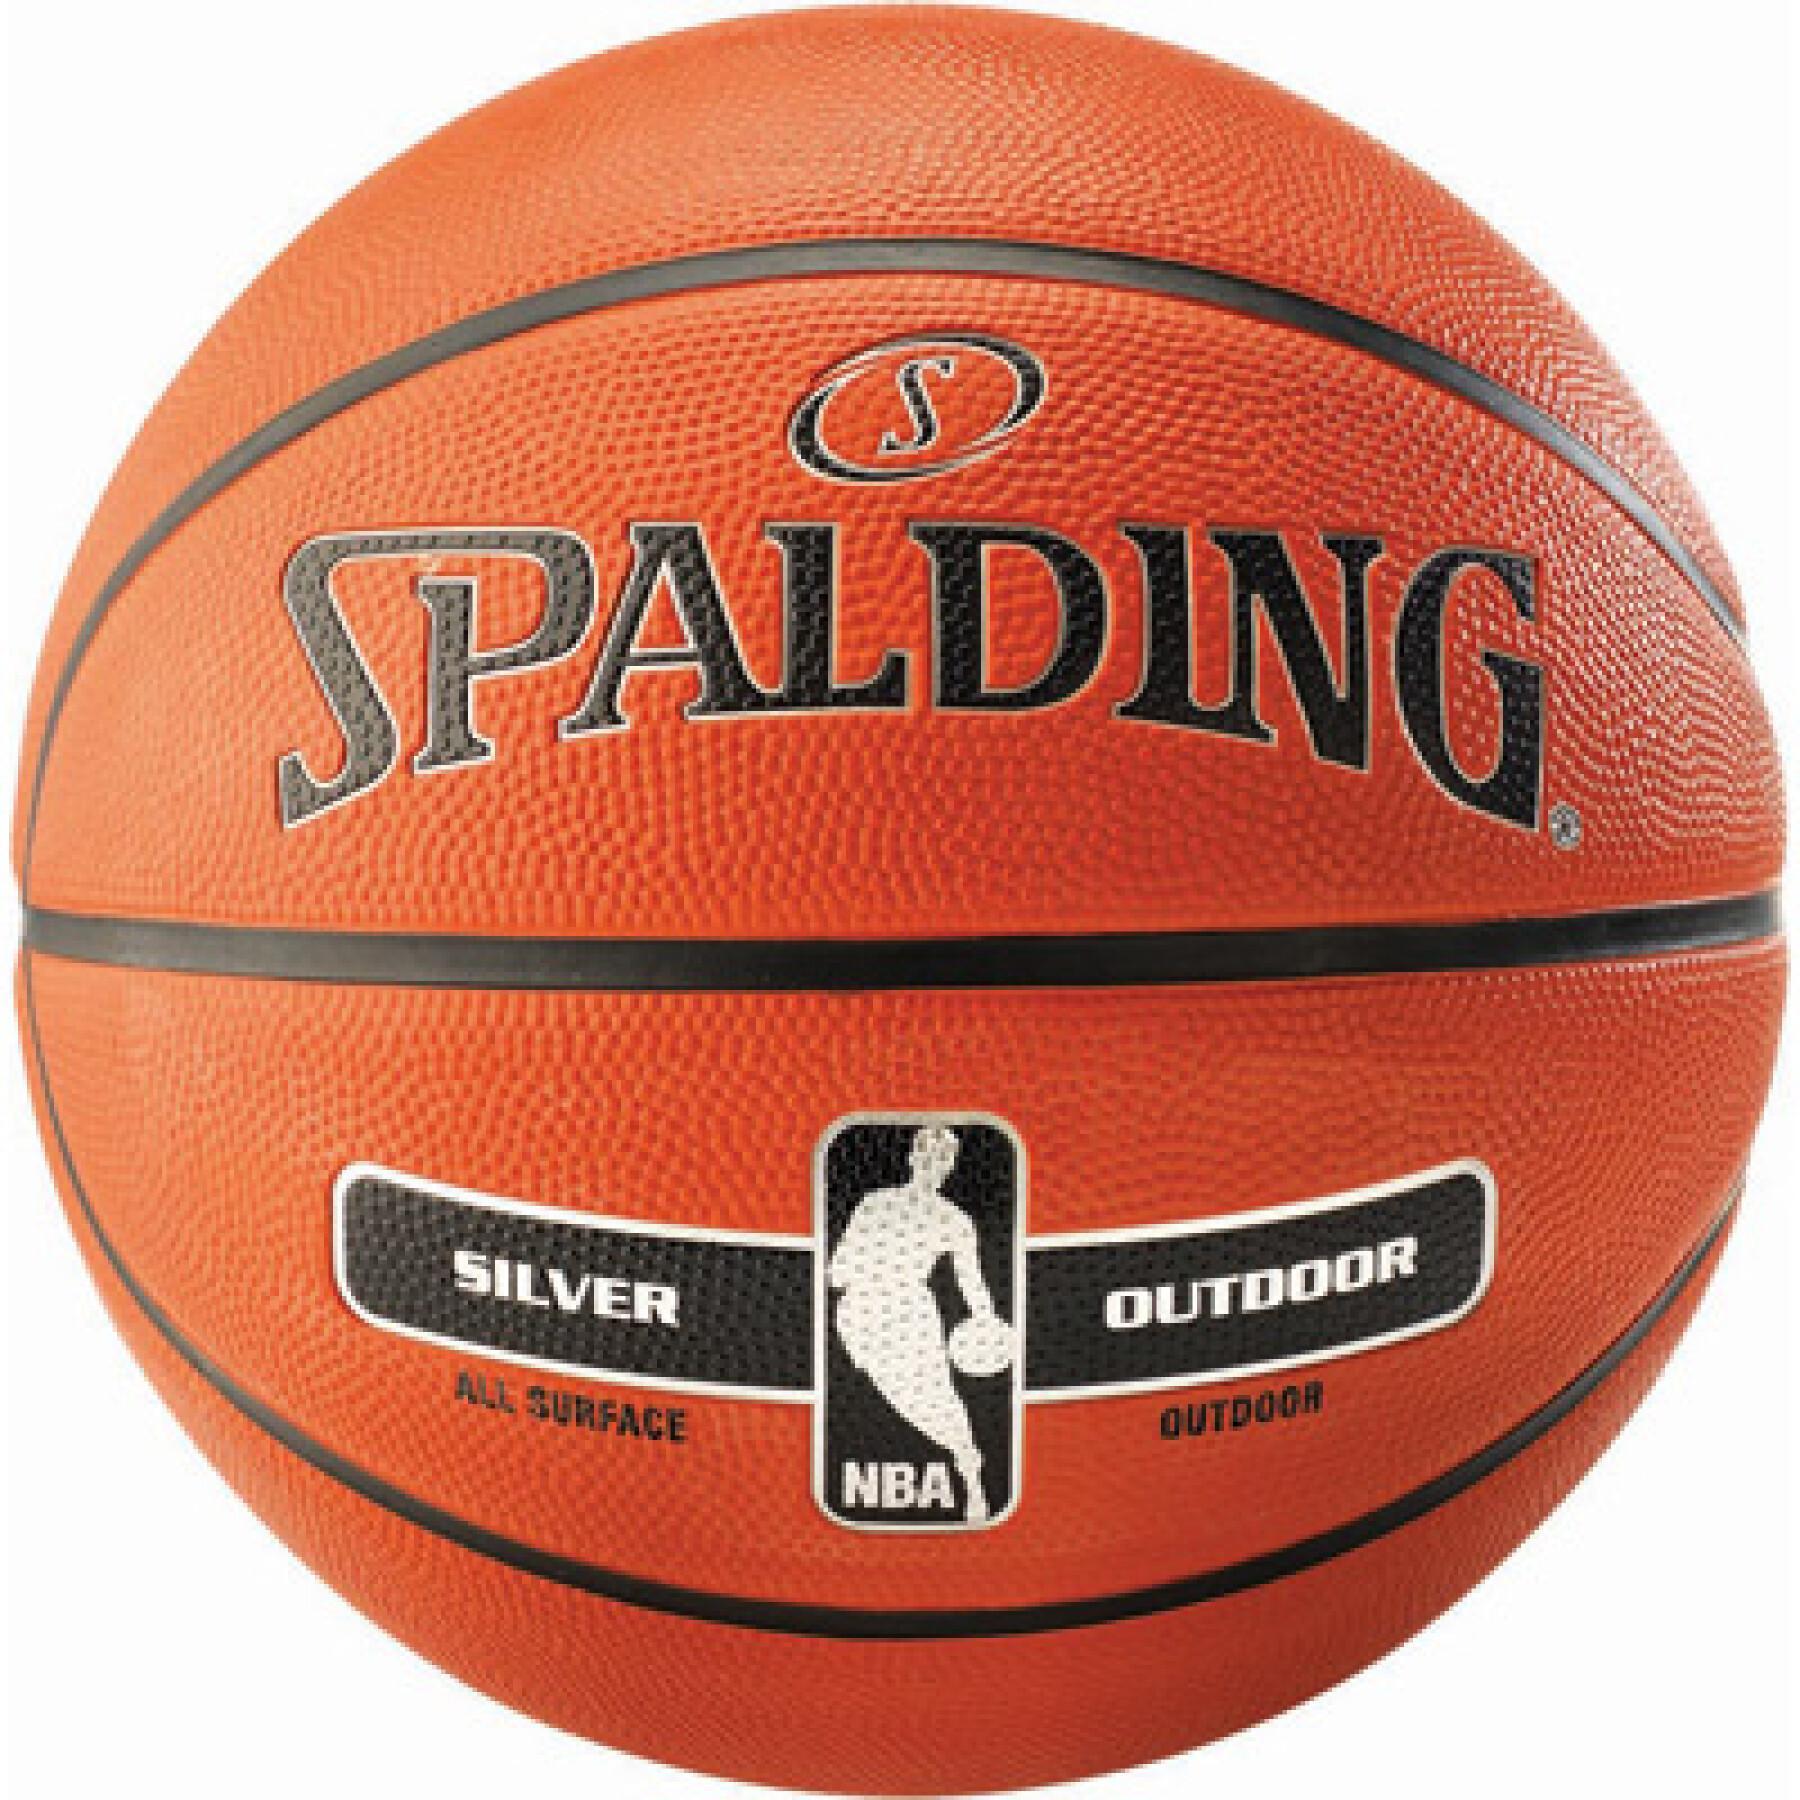 Basketboll Spalding Nba Silver outdoor